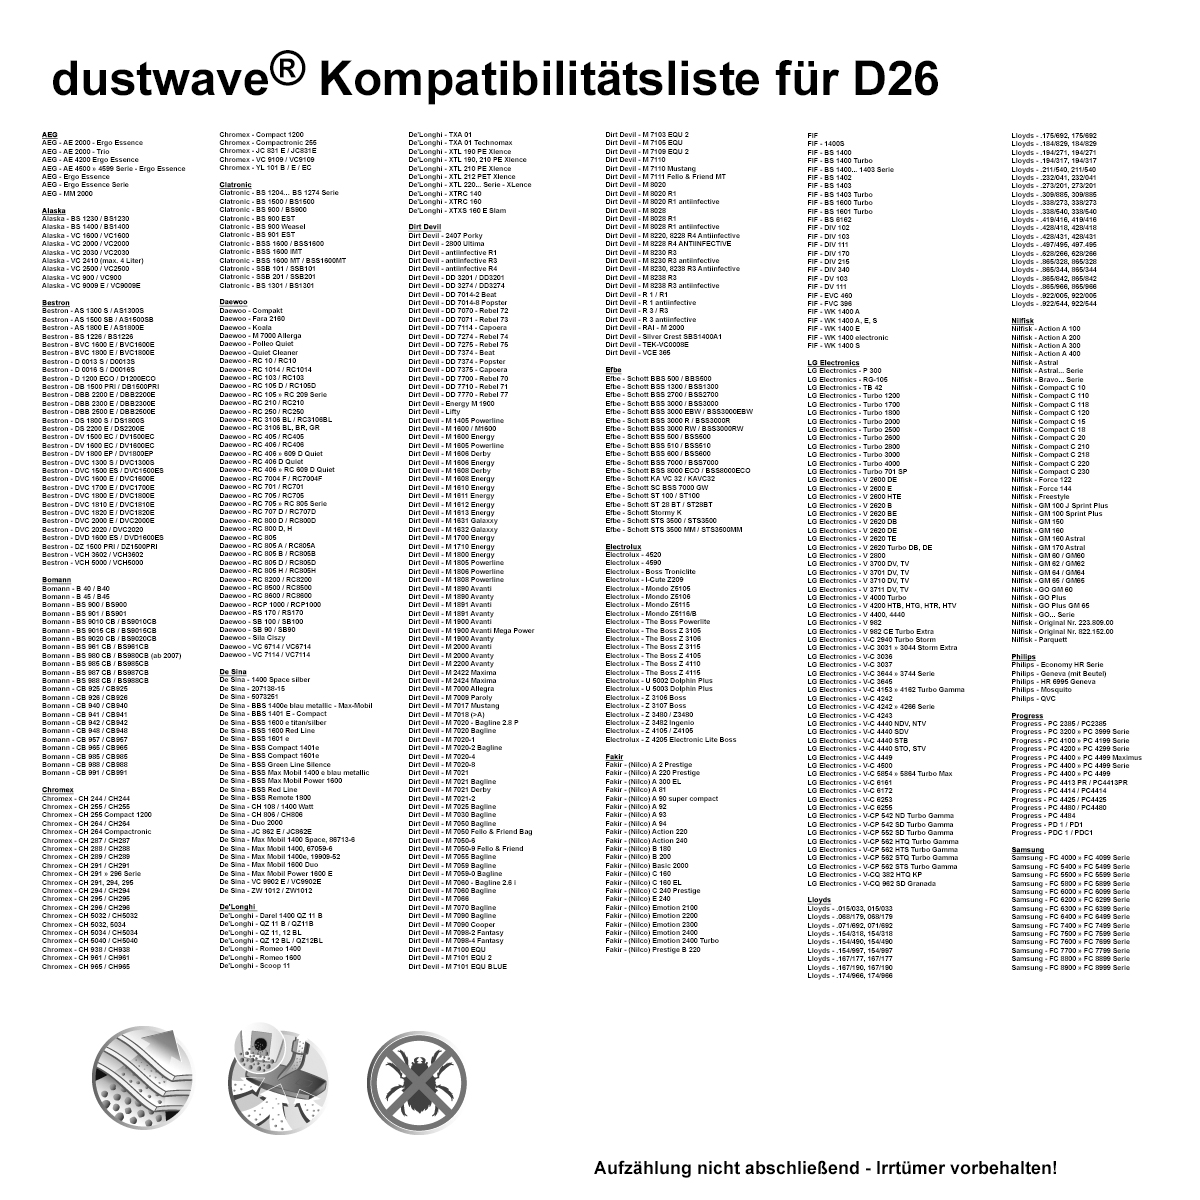 Dustwave® 1 Staubsaugerbeutel für Bomann BS 9020 CB - hocheffizient mit Hygieneverschluss - Made in Germany